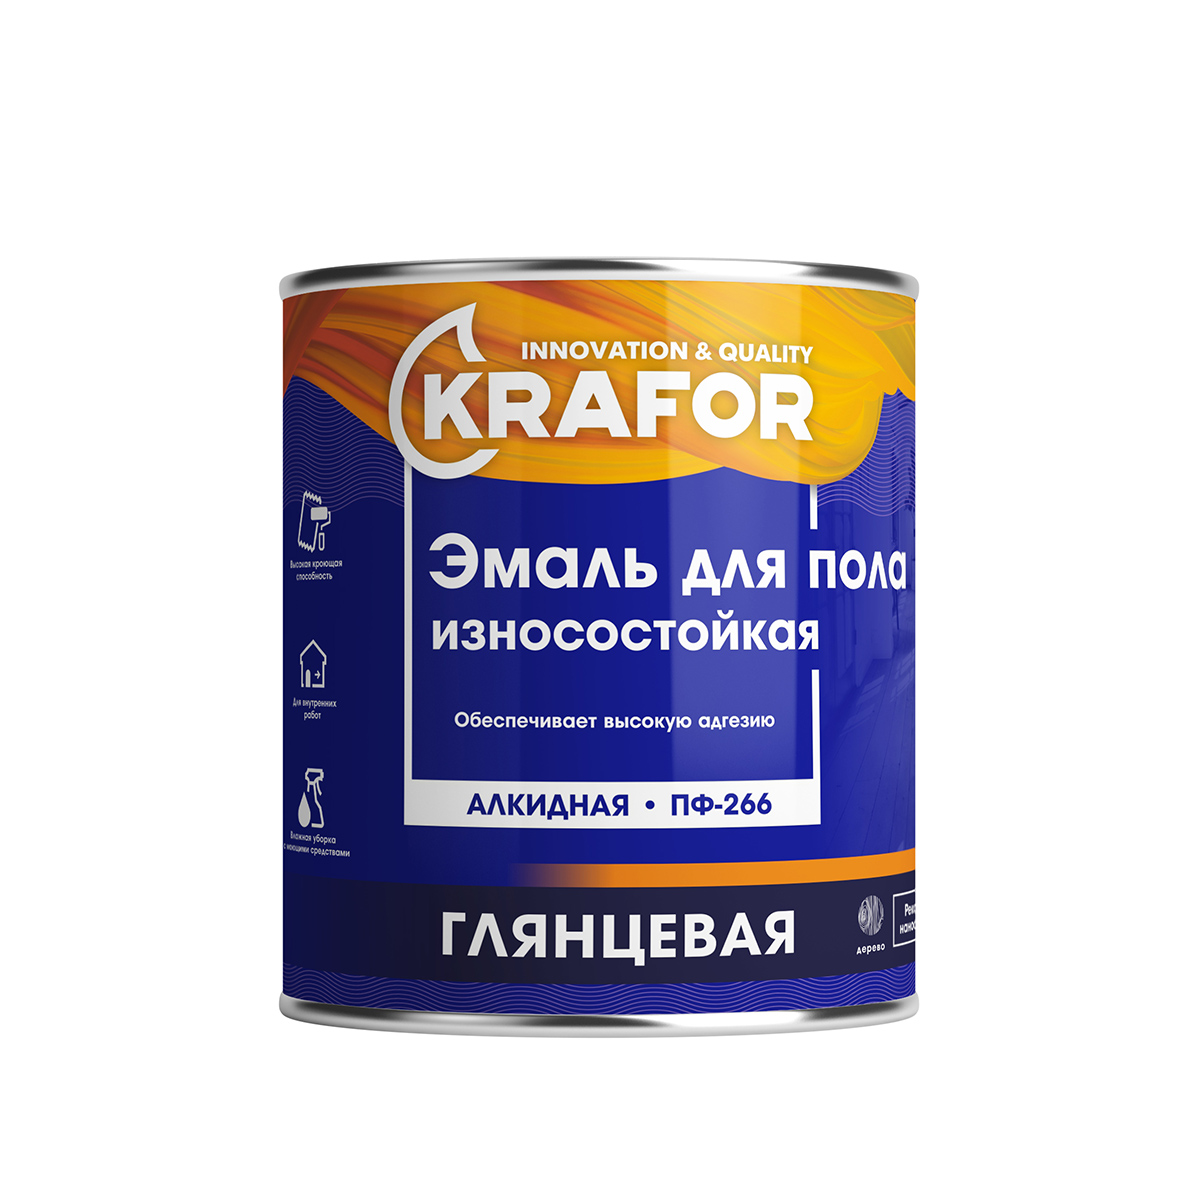 Эмаль ПФ-266 для пола Krafor, алкидная, глянцевая, 6 кг, красно-коричневая износостойкая эмаль для пола krafor пф 266 красно коричневая 0 9 кг 6 206156